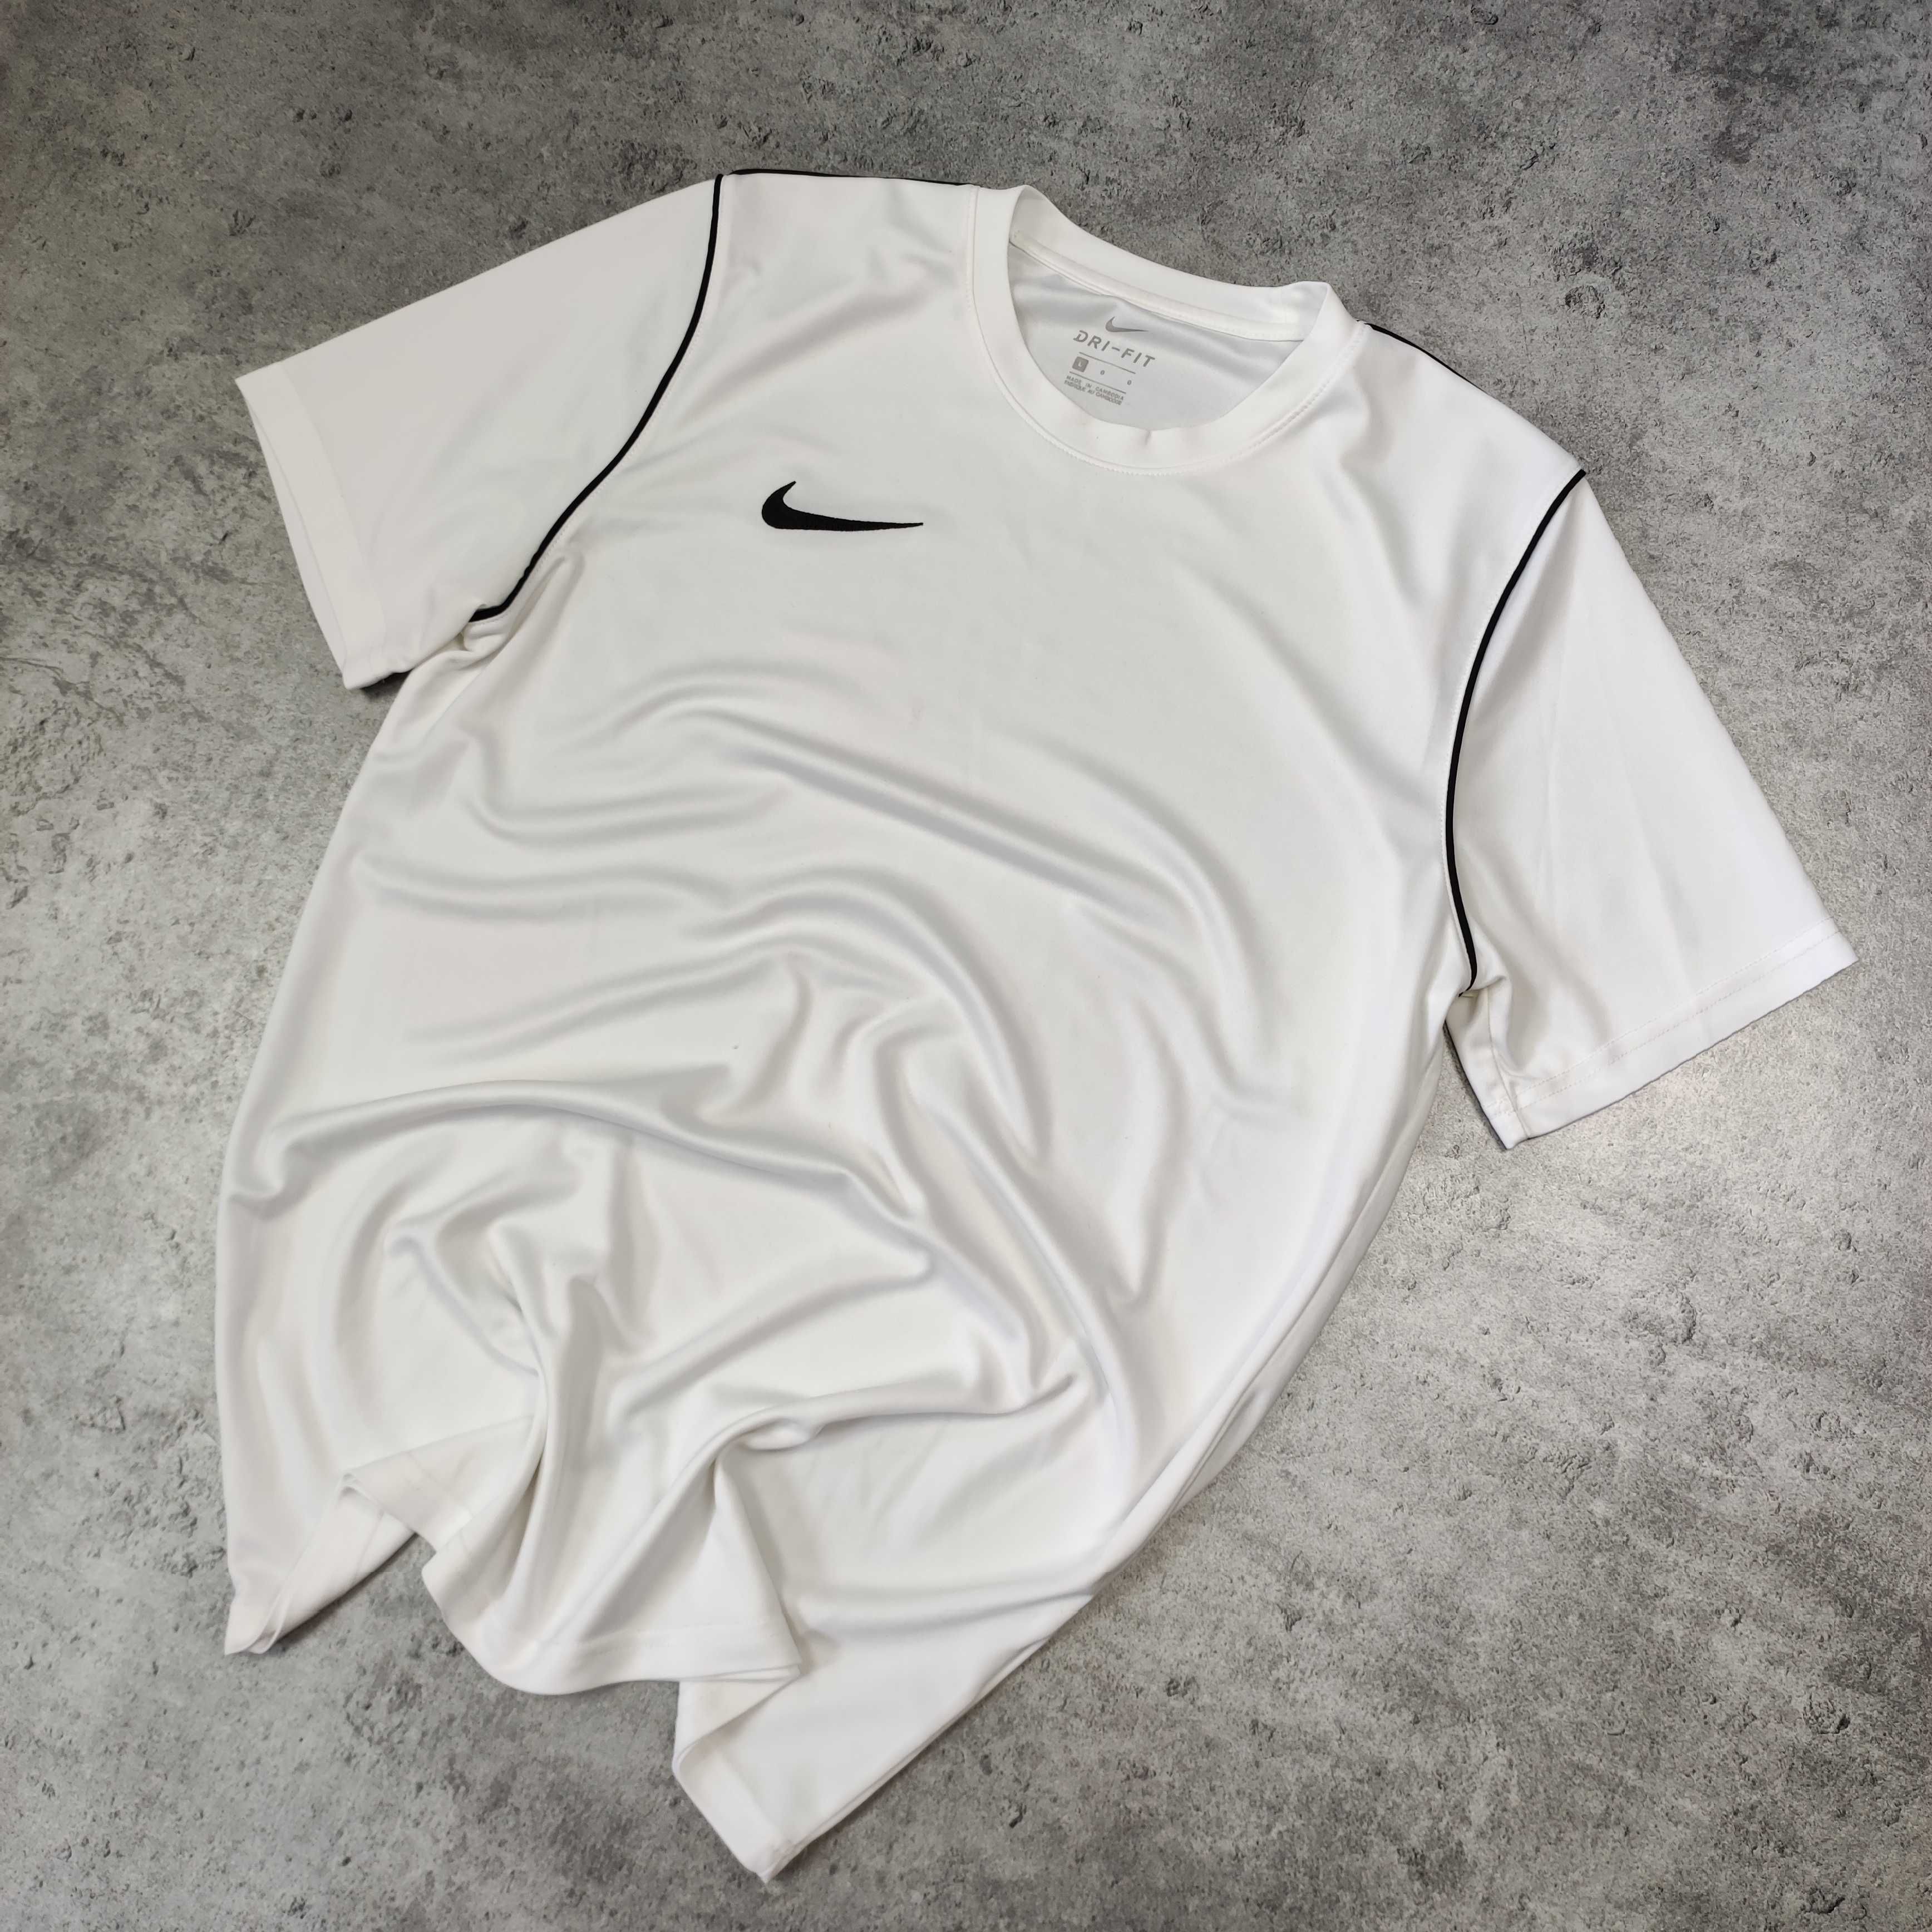 MĘSKA Koszulka Sportowa Biała z Małym Logo Haft Nike Biegowa Siłownia